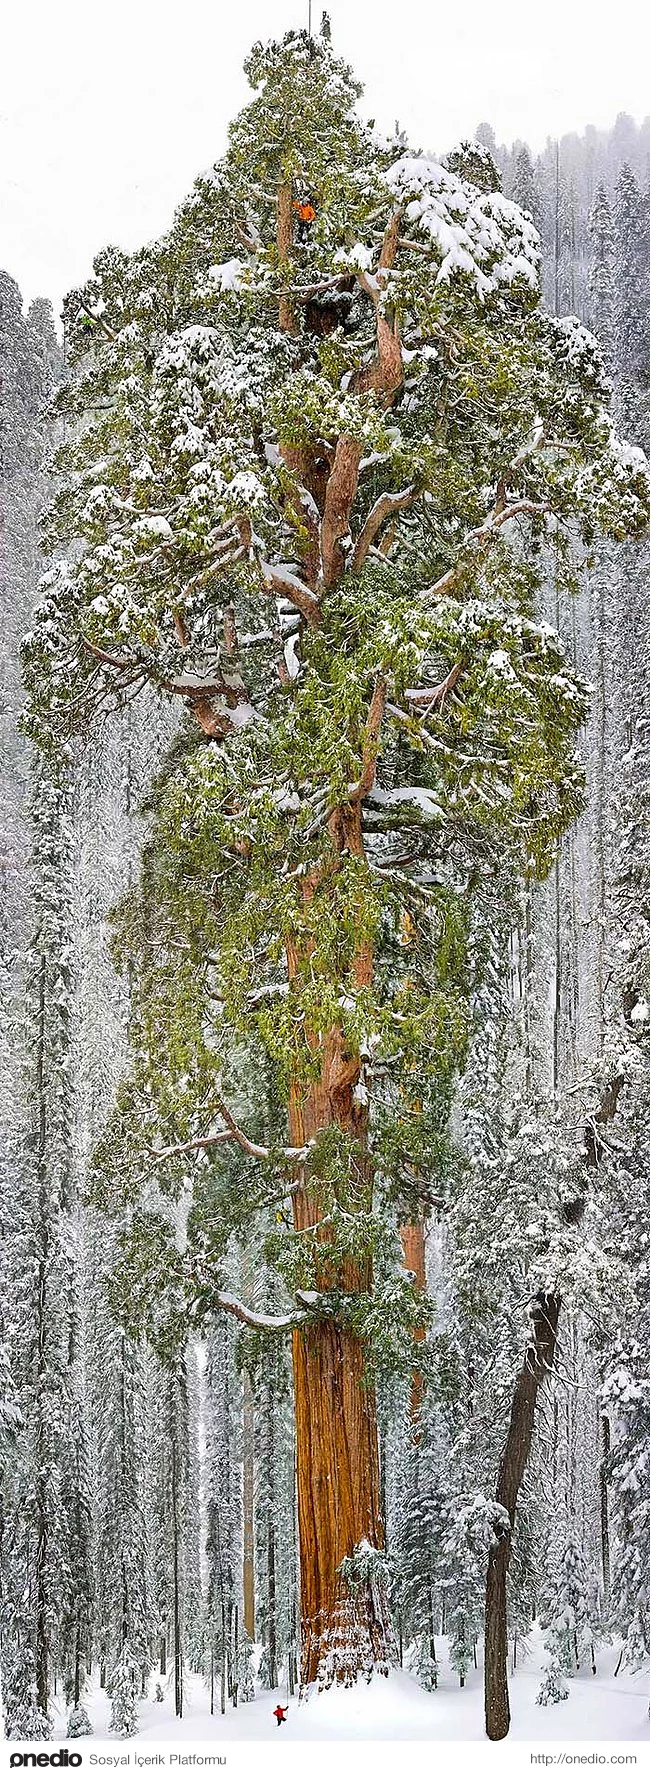 6. Dünyanın en büyük sekoya ağaçlarından biri Kaliforniya'da bulunuyor.